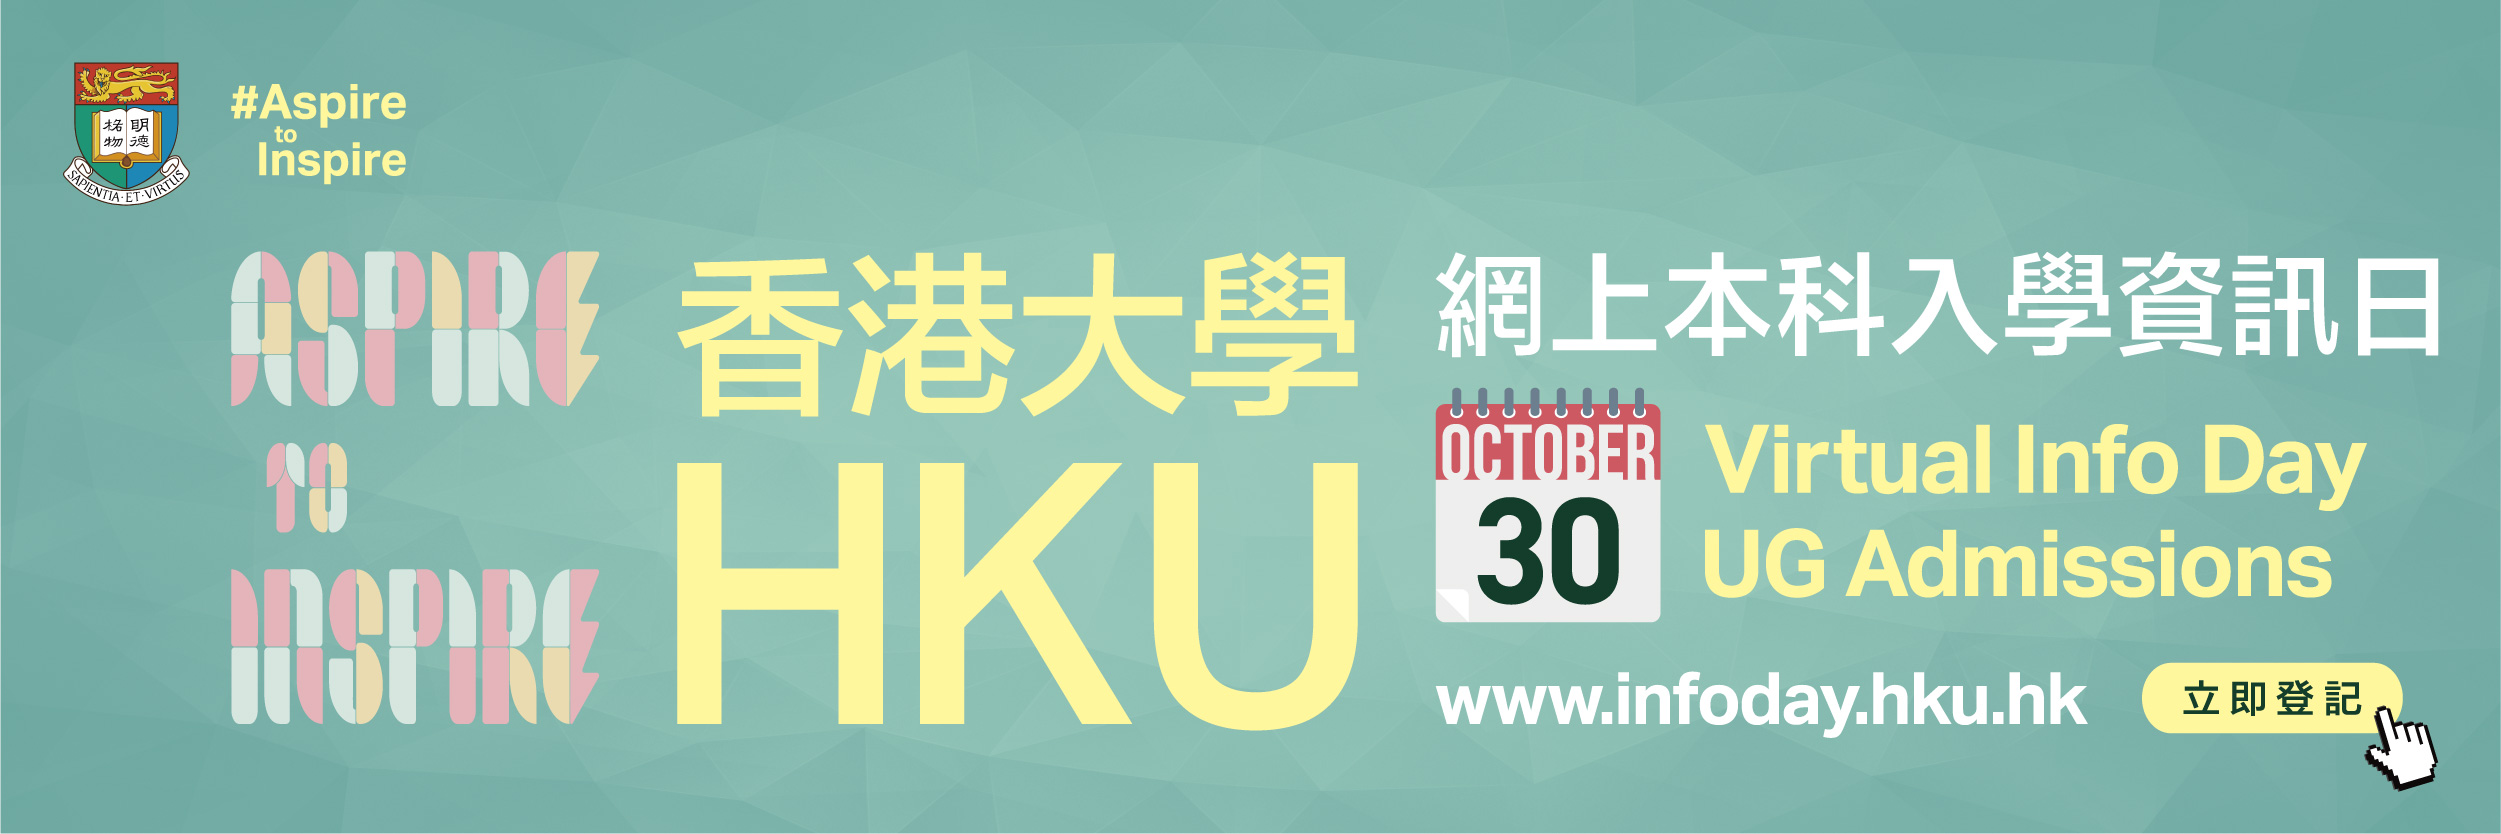 動畫橫幅 "HKU Virtual Info Day UG Admissions"